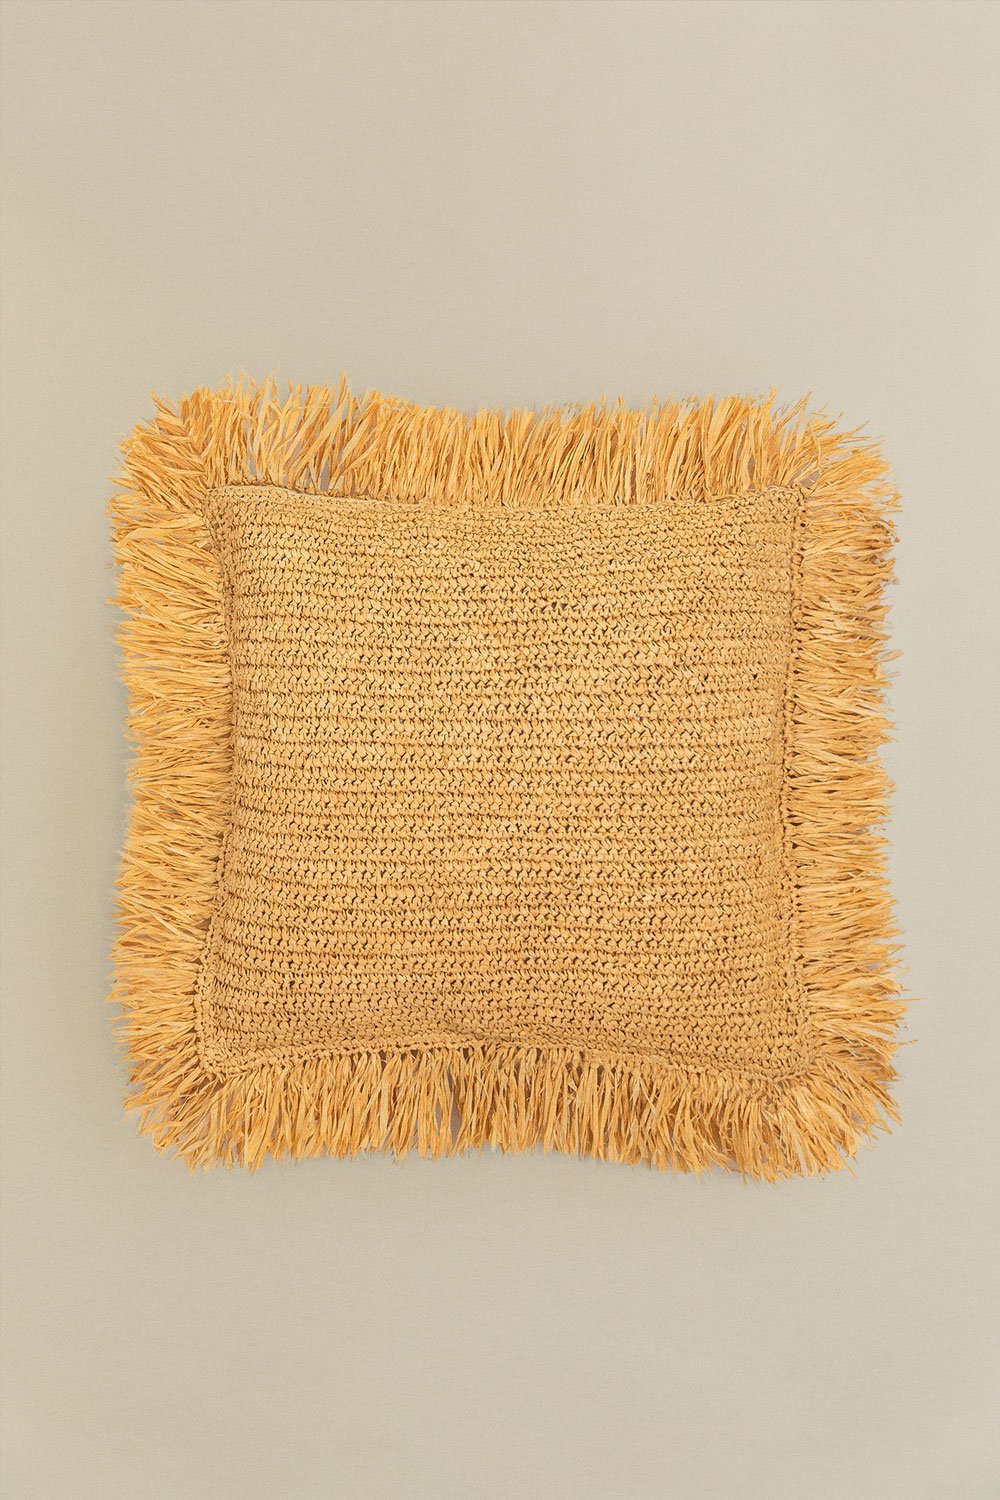 Cuscino quadrato in rafia intrecciata (45x45 cm) Doncka, immagine della galleria 1